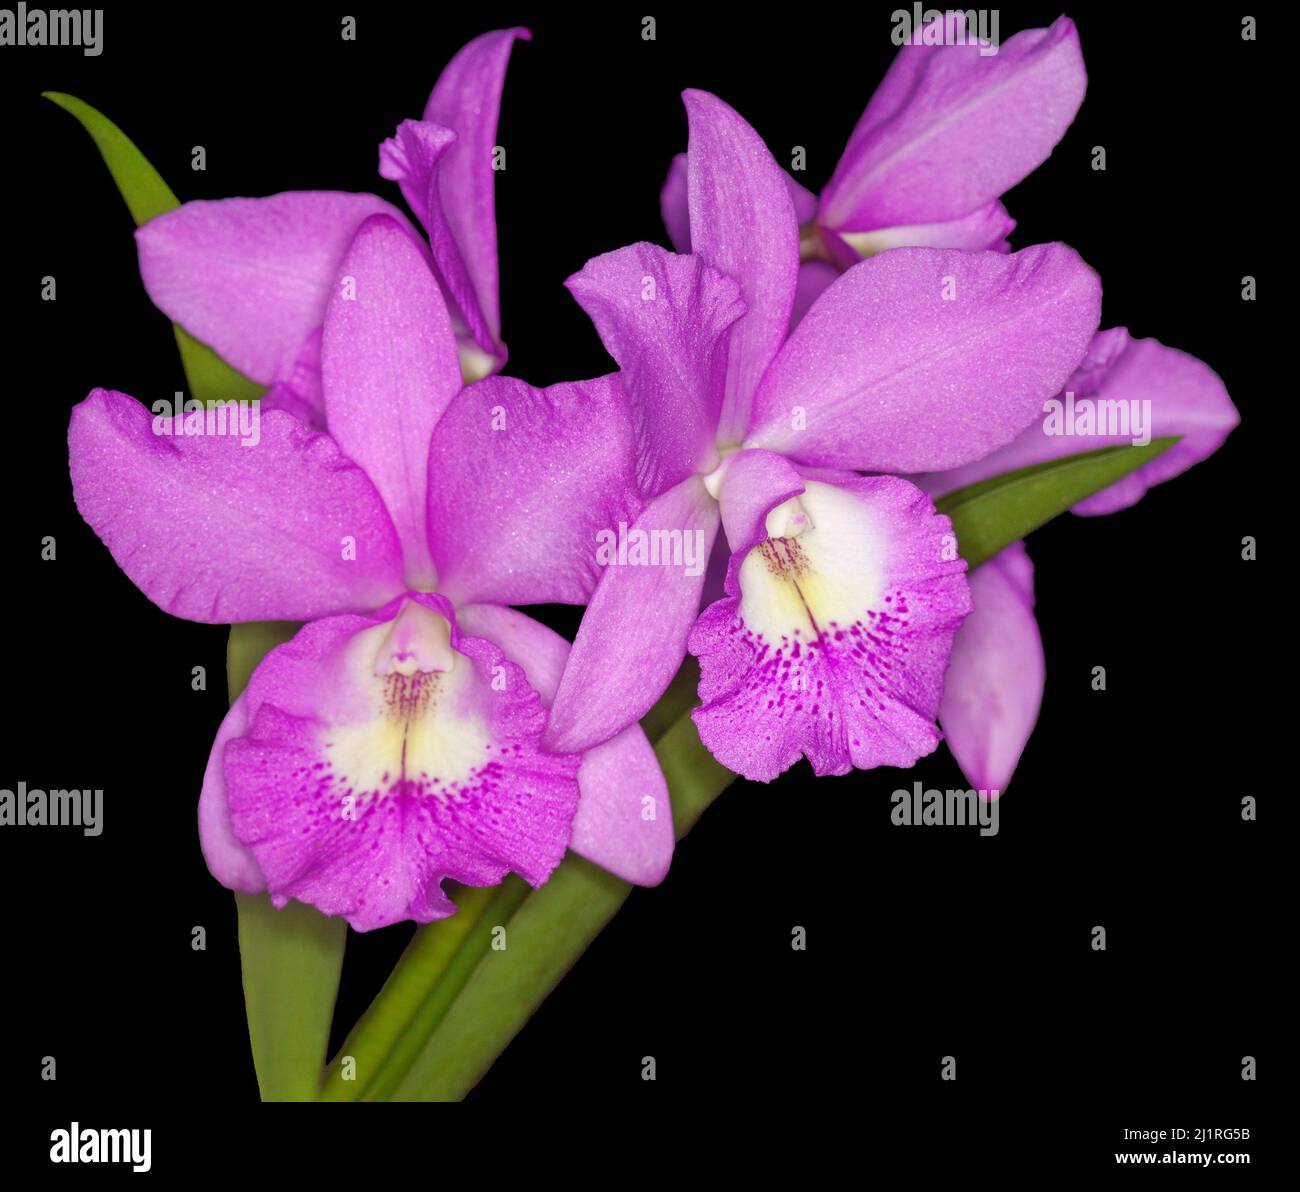 Grappe de fleurs roses / mauves et blanches parfumées de Brassocattleya BC Orchid 'Little Mermaid' Janet sur fond noir Banque D'Images